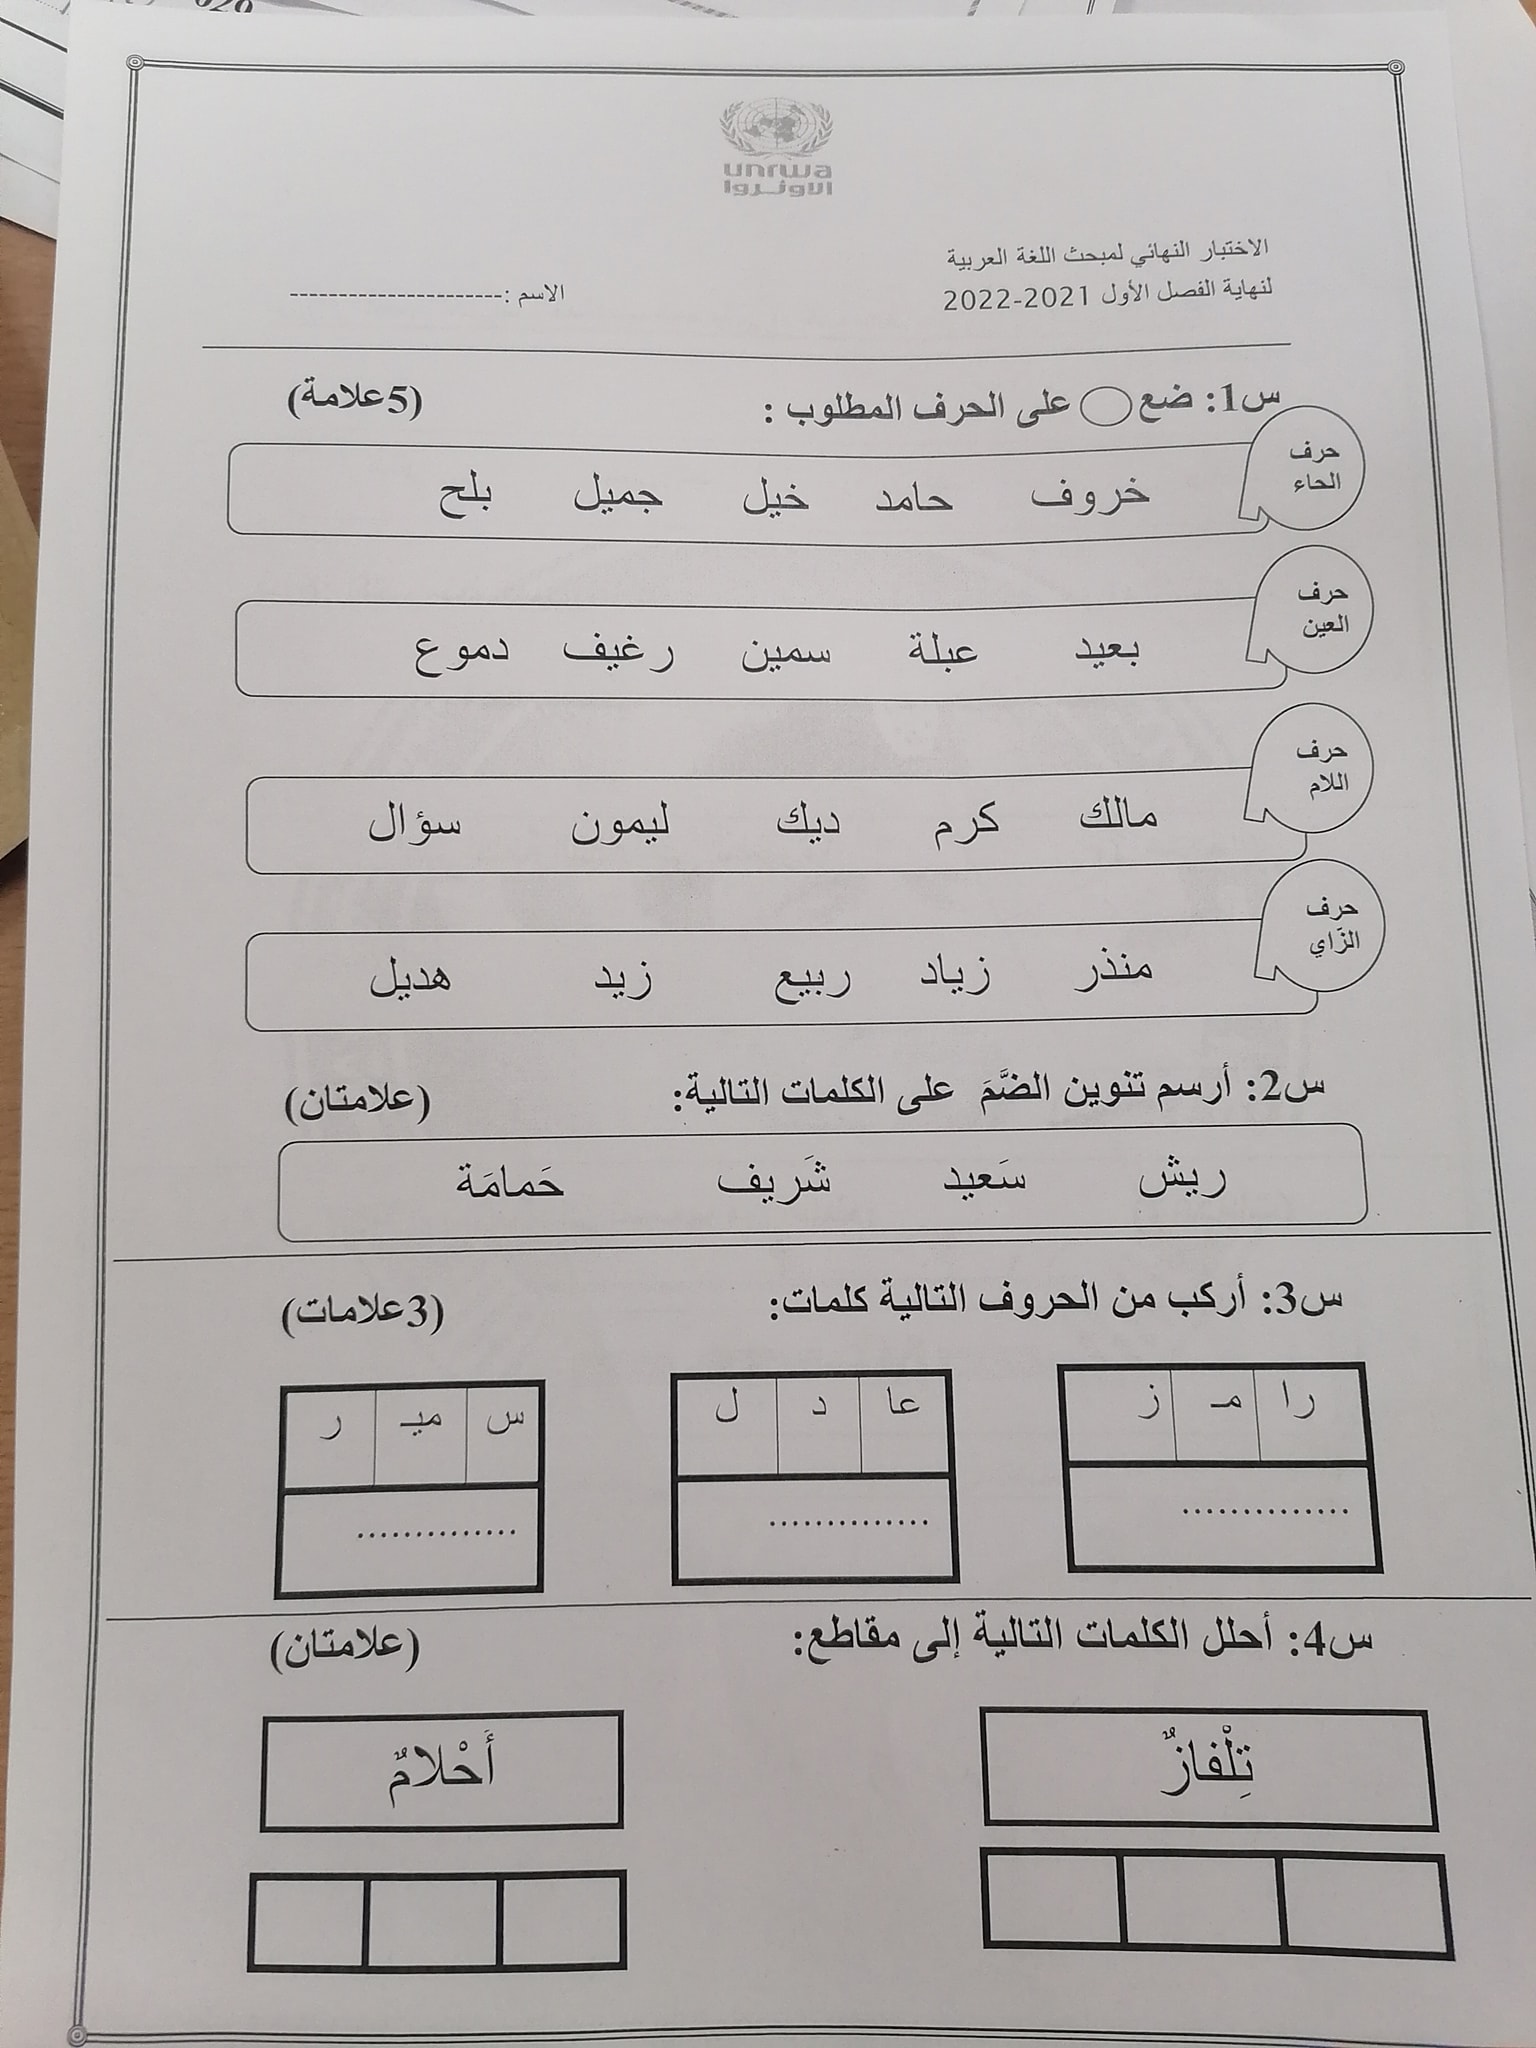 1 بالصور امتحان لغة عربية نهائي للصف الاول الفصل الاول 2021.jpg